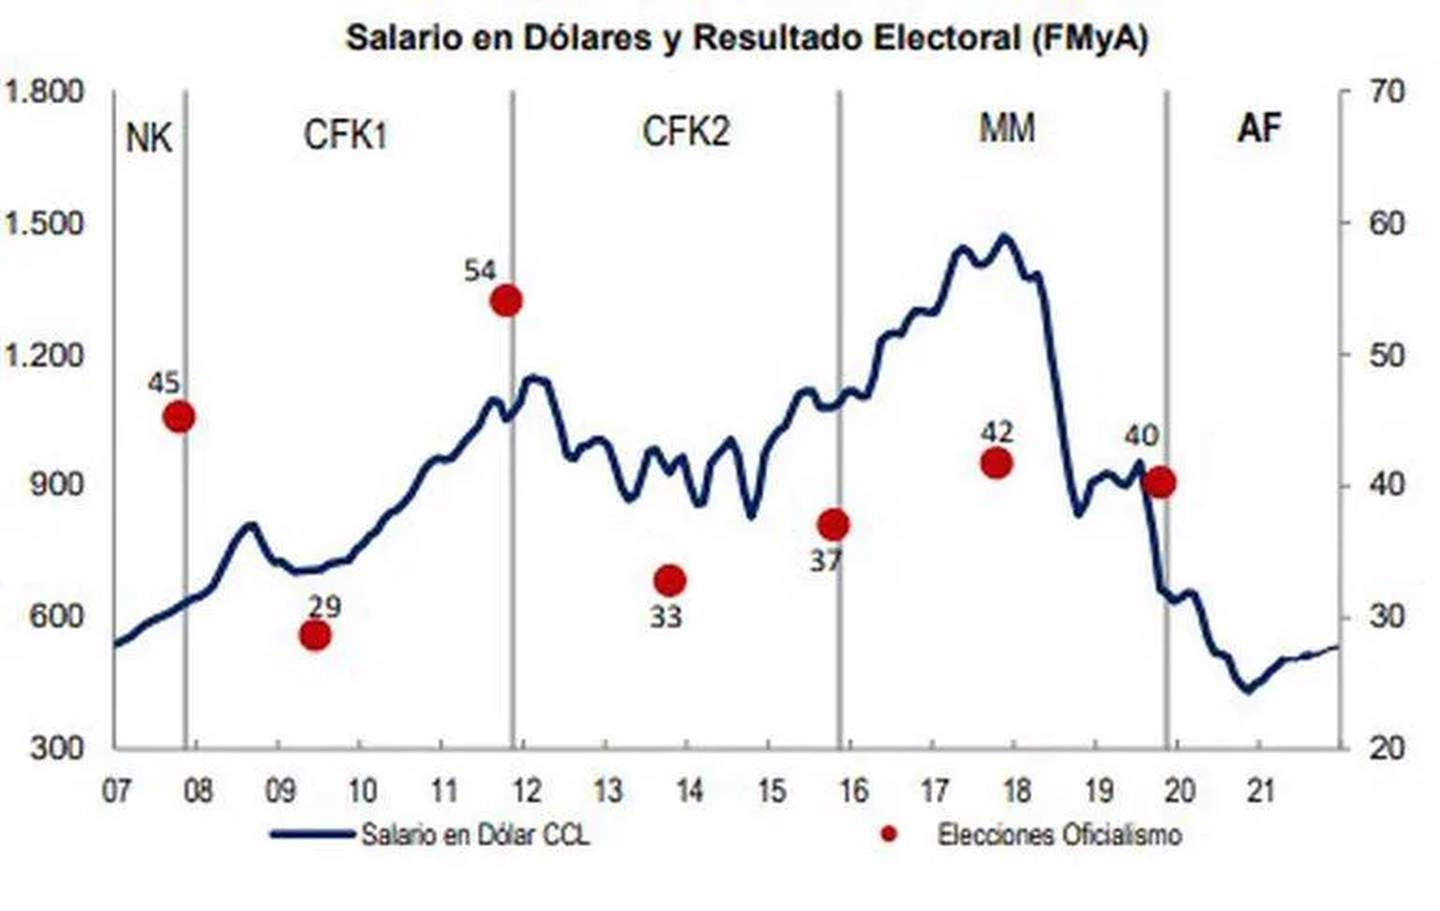 Salario en dólares vs. Resultado electoraldfd